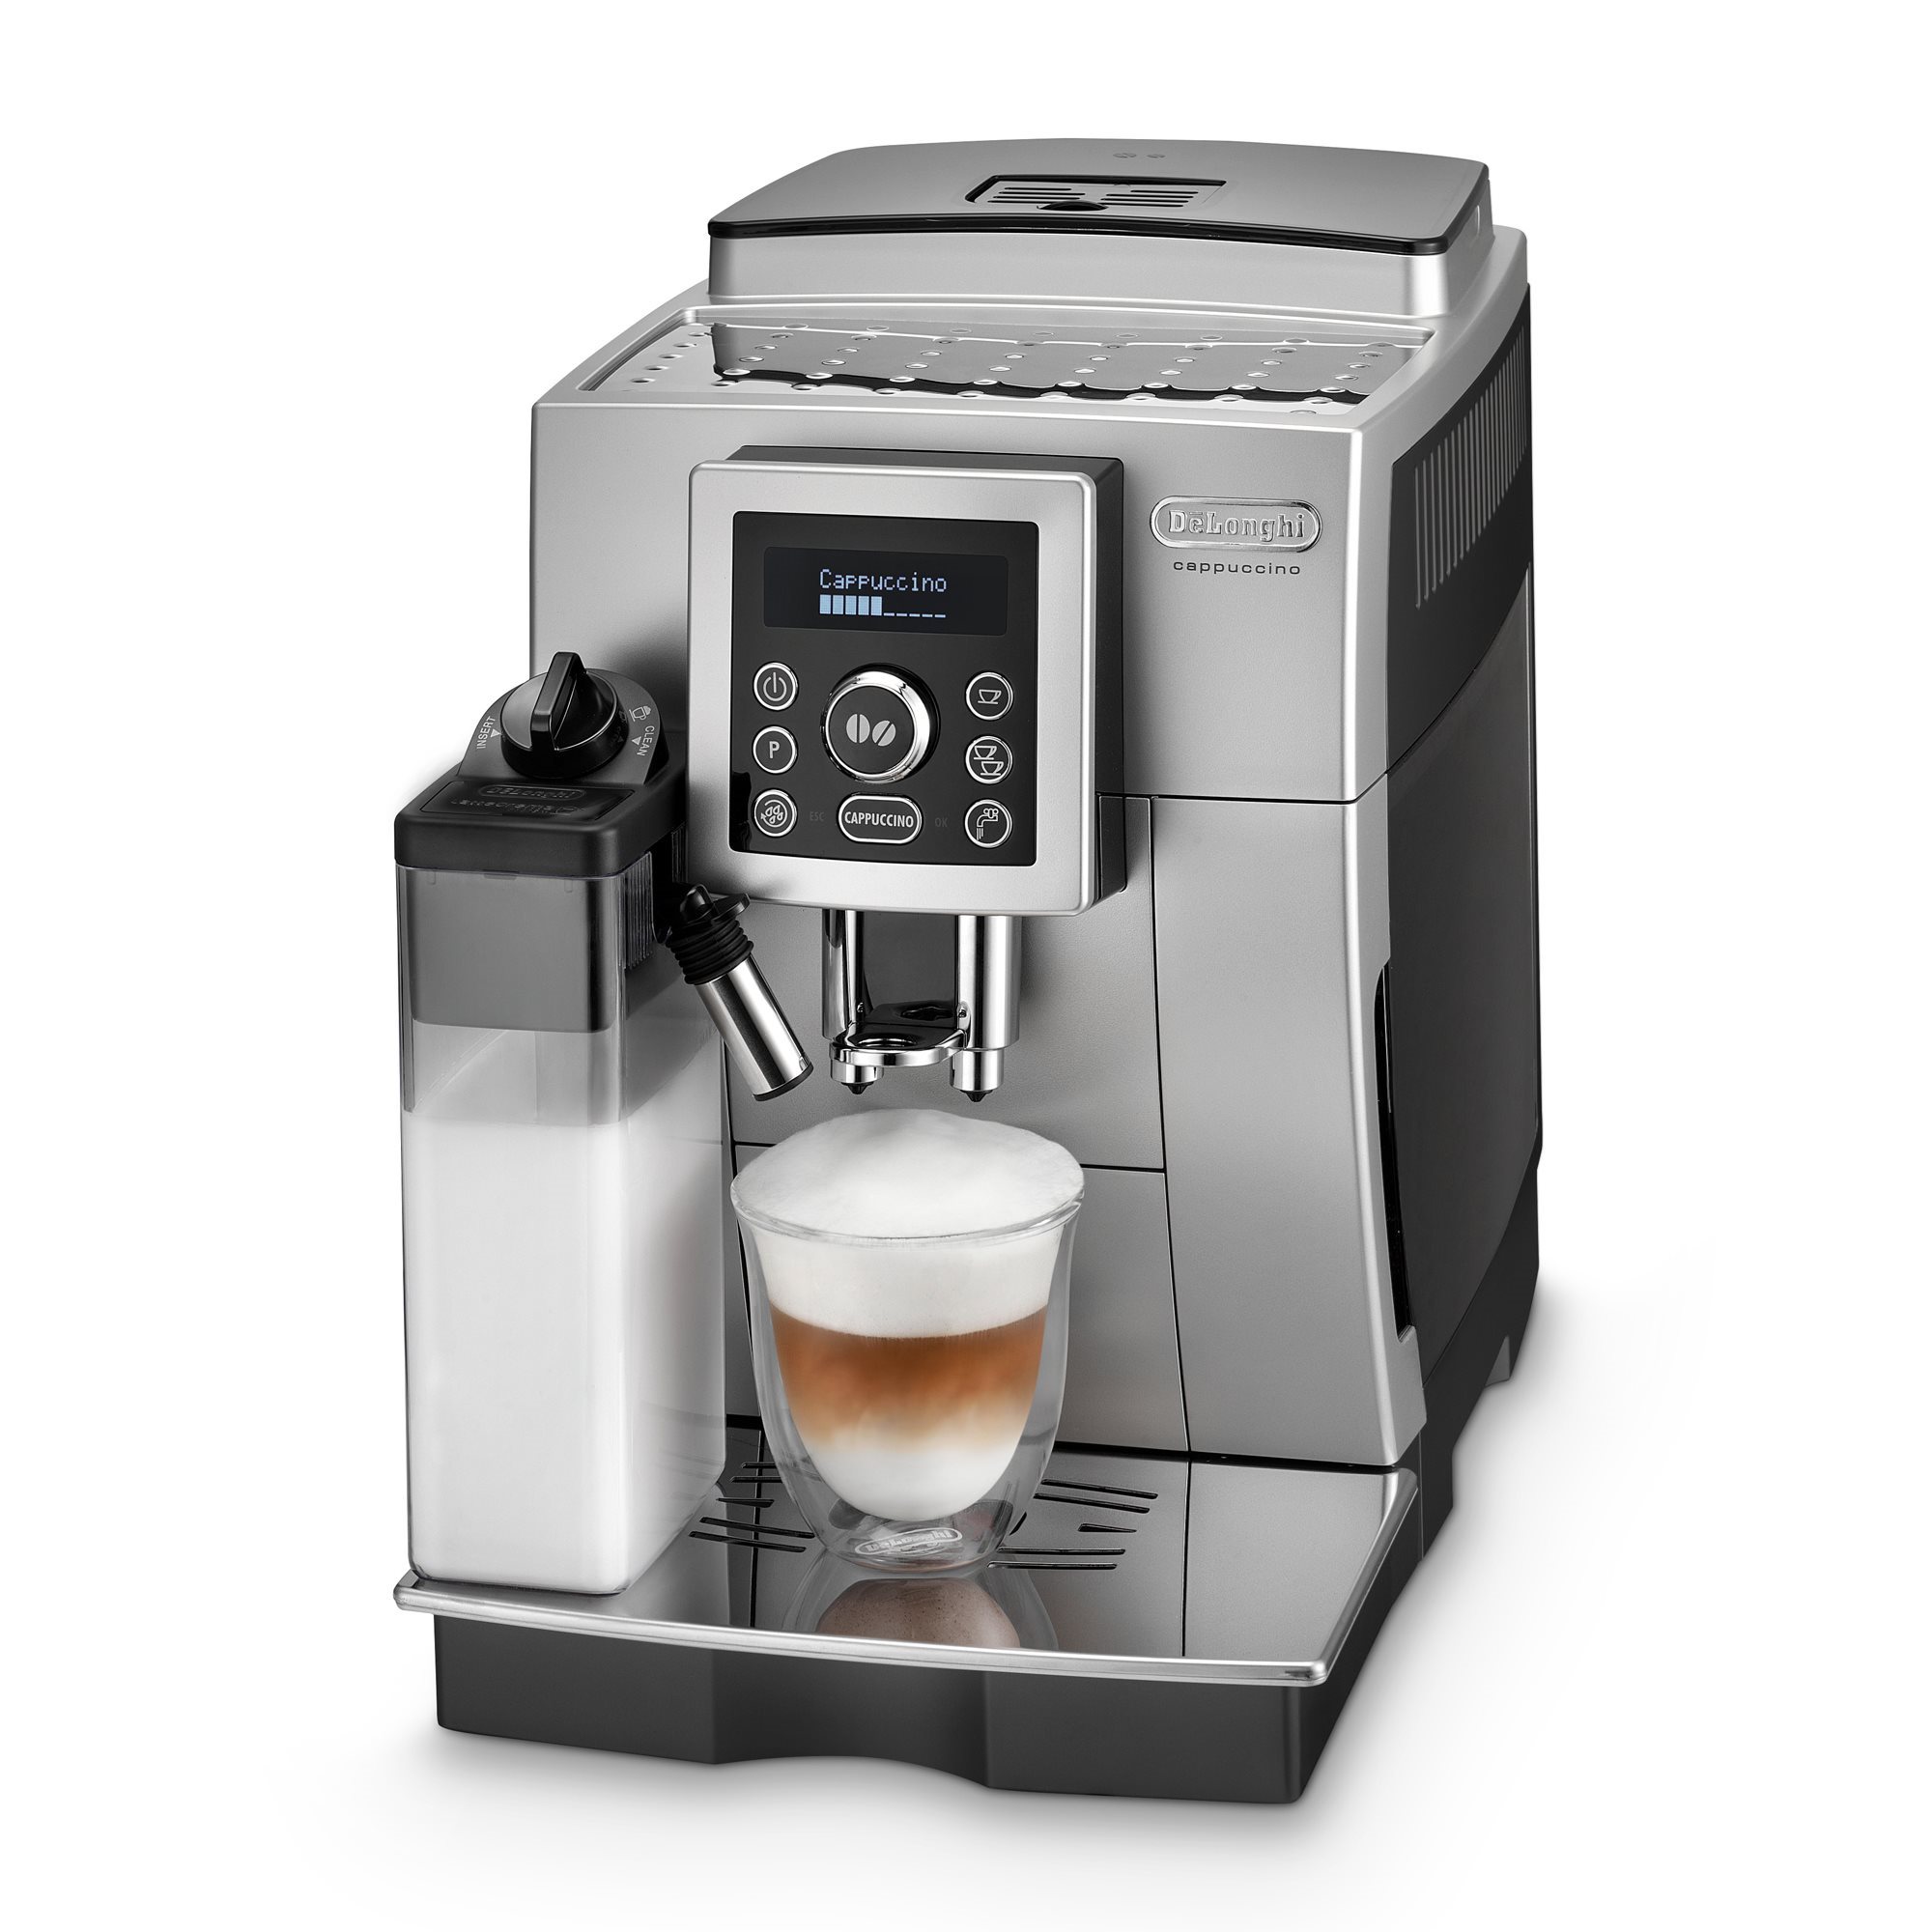 Manual espresso machine, 1450W, La Prestista Prestigio, silver